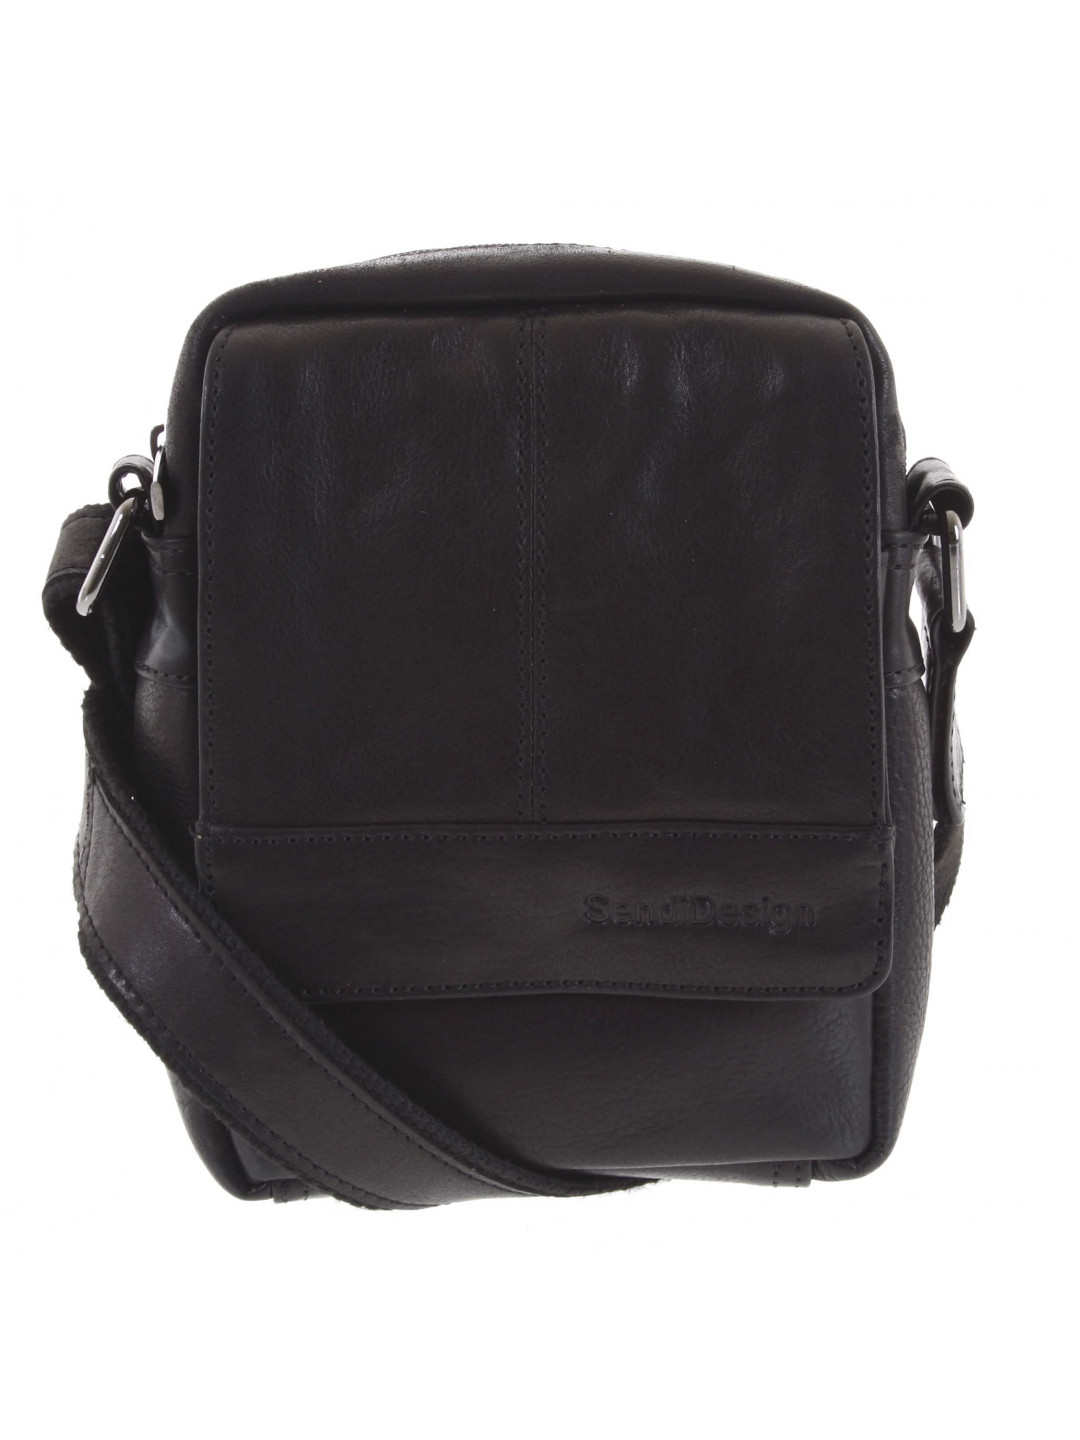 Pánská kožená crossbody taška na doklady černá – SendiDesign Niall